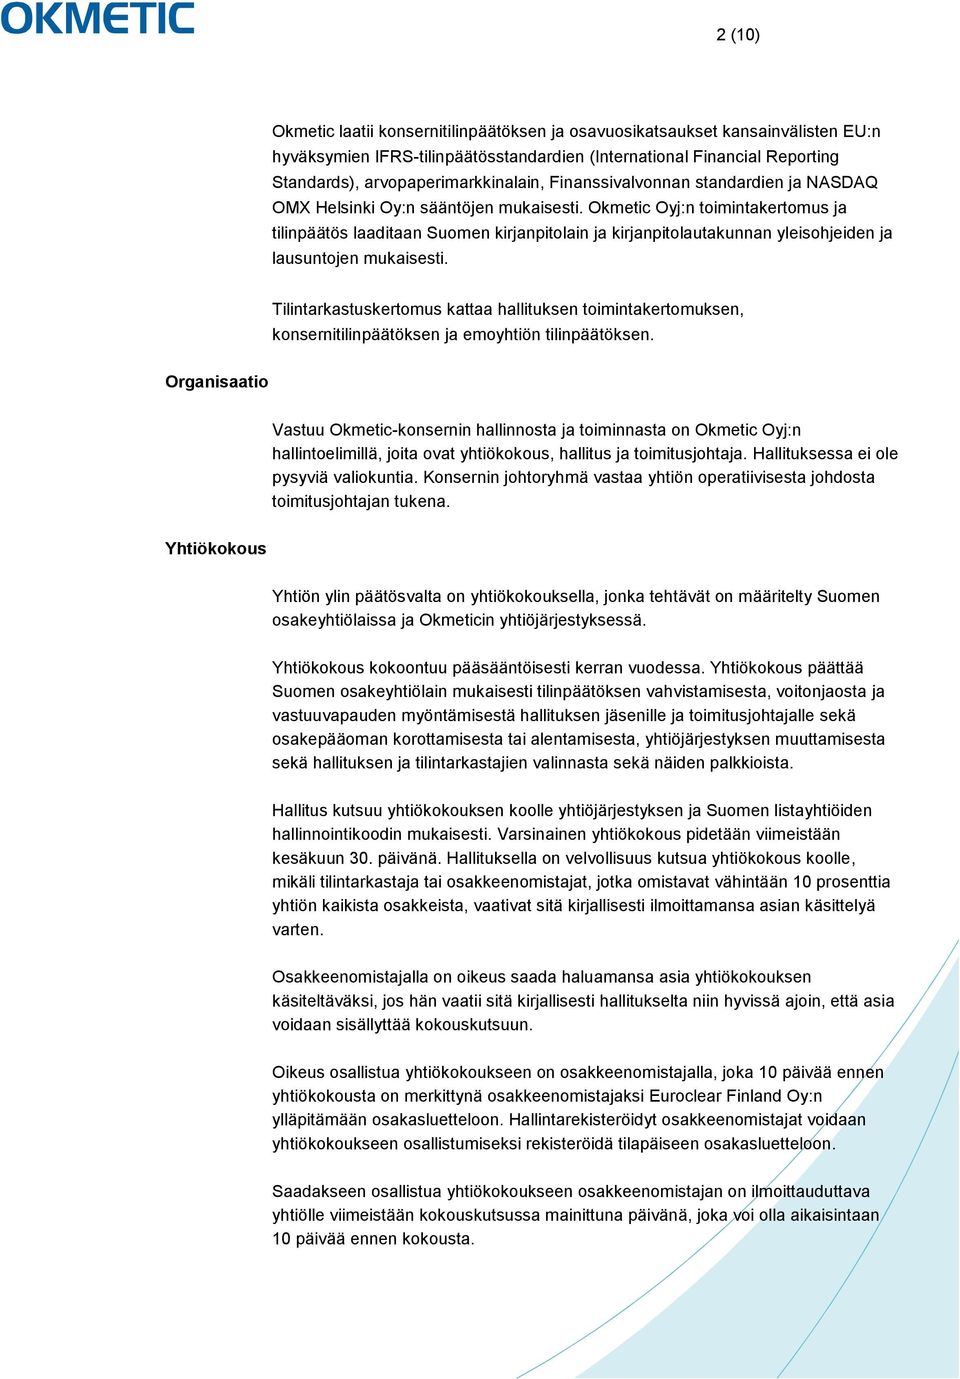 Okmetic Oyj:n toimintakertomus ja tilinpäätös laaditaan Suomen kirjanpitolain ja kirjanpitolautakunnan yleisohjeiden ja lausuntojen mukaisesti.